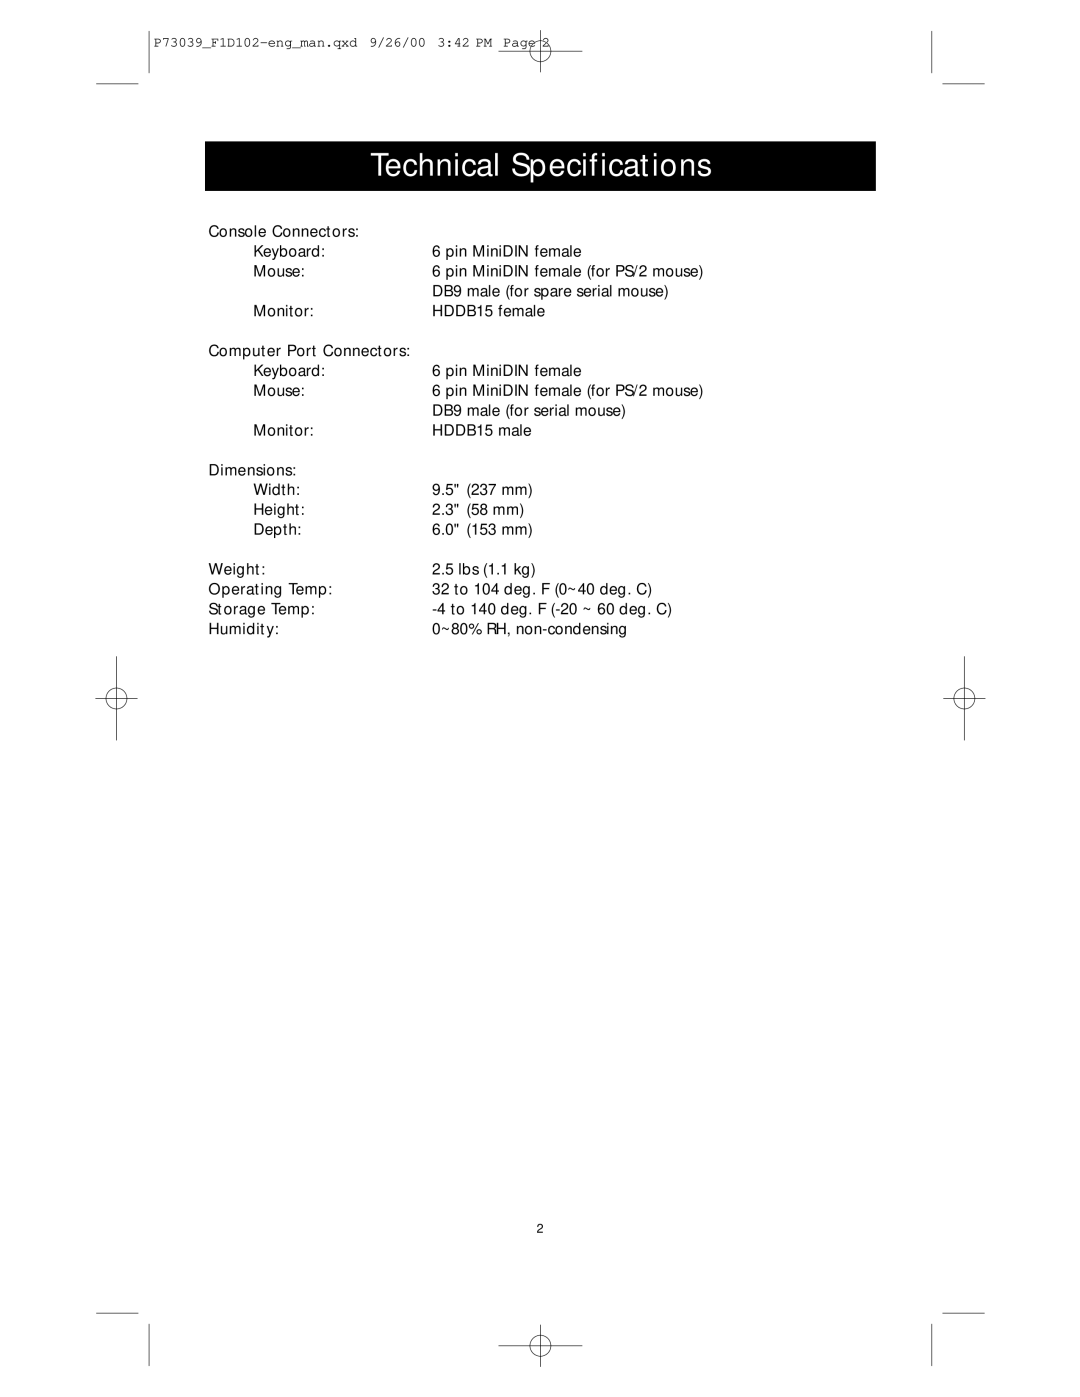 Belkin SE 2-Port user manual Technical Specifications 